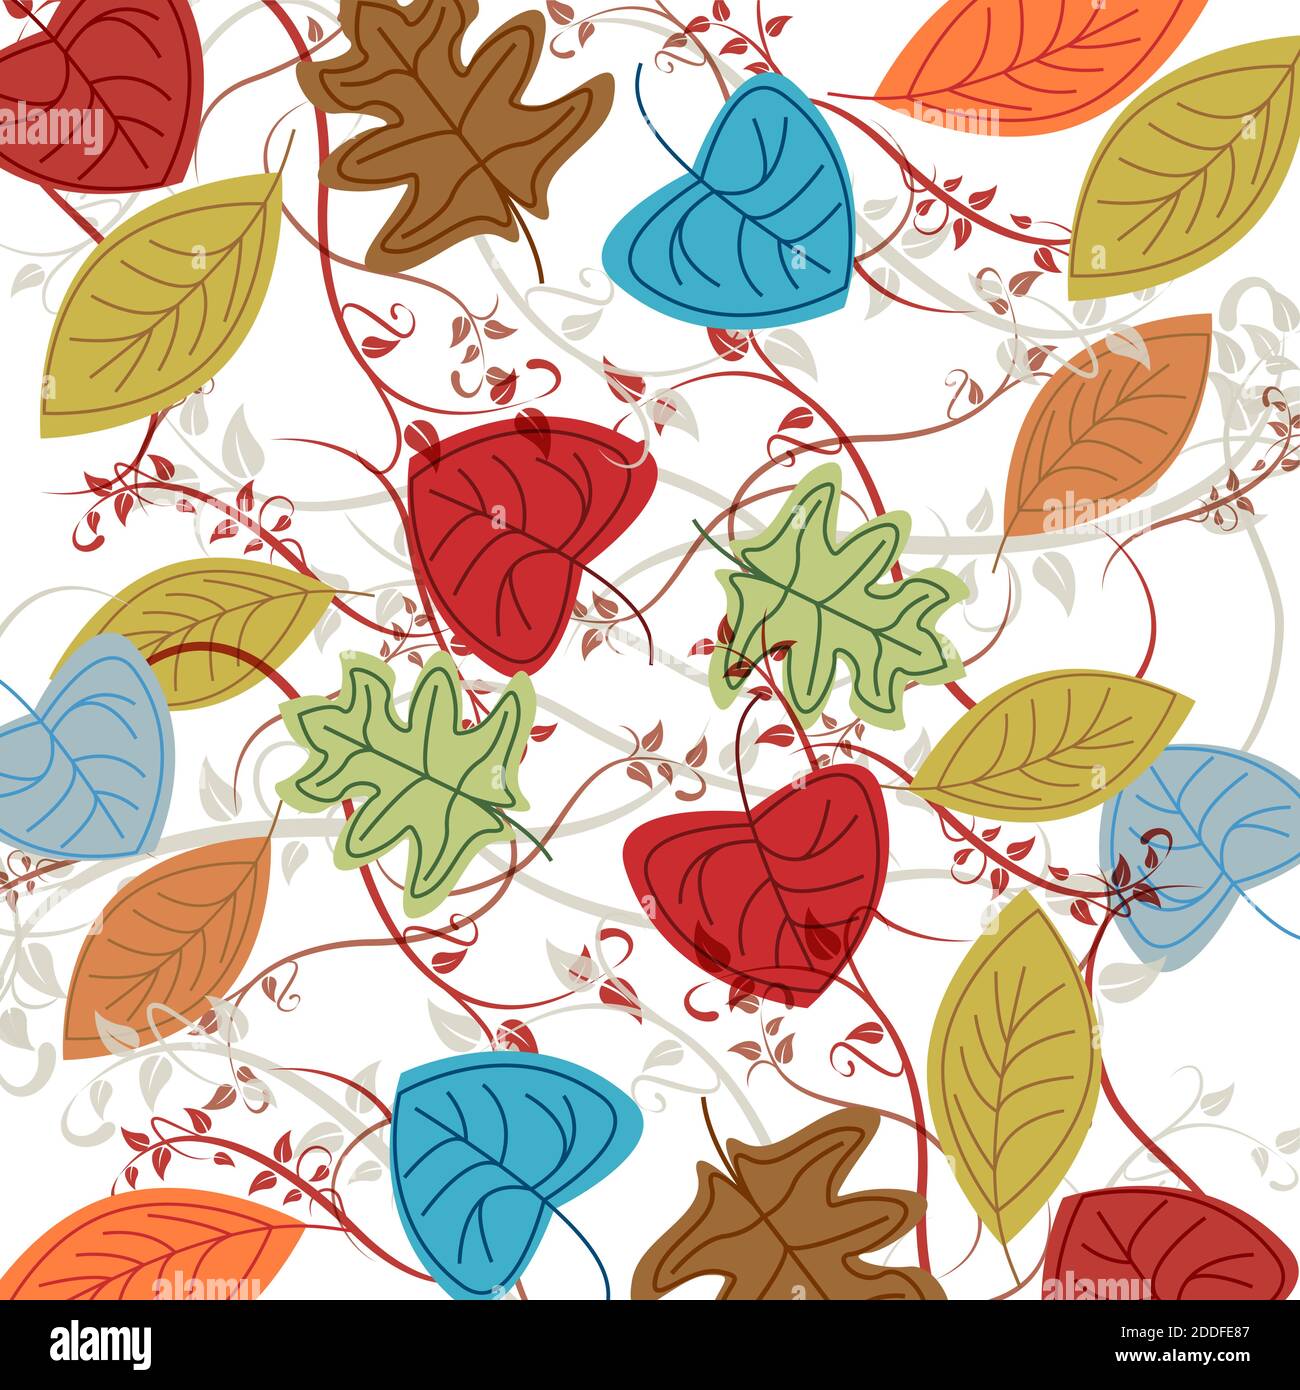 Vettore foglie morte, sfondo autunno Illustrazione Vettoriale